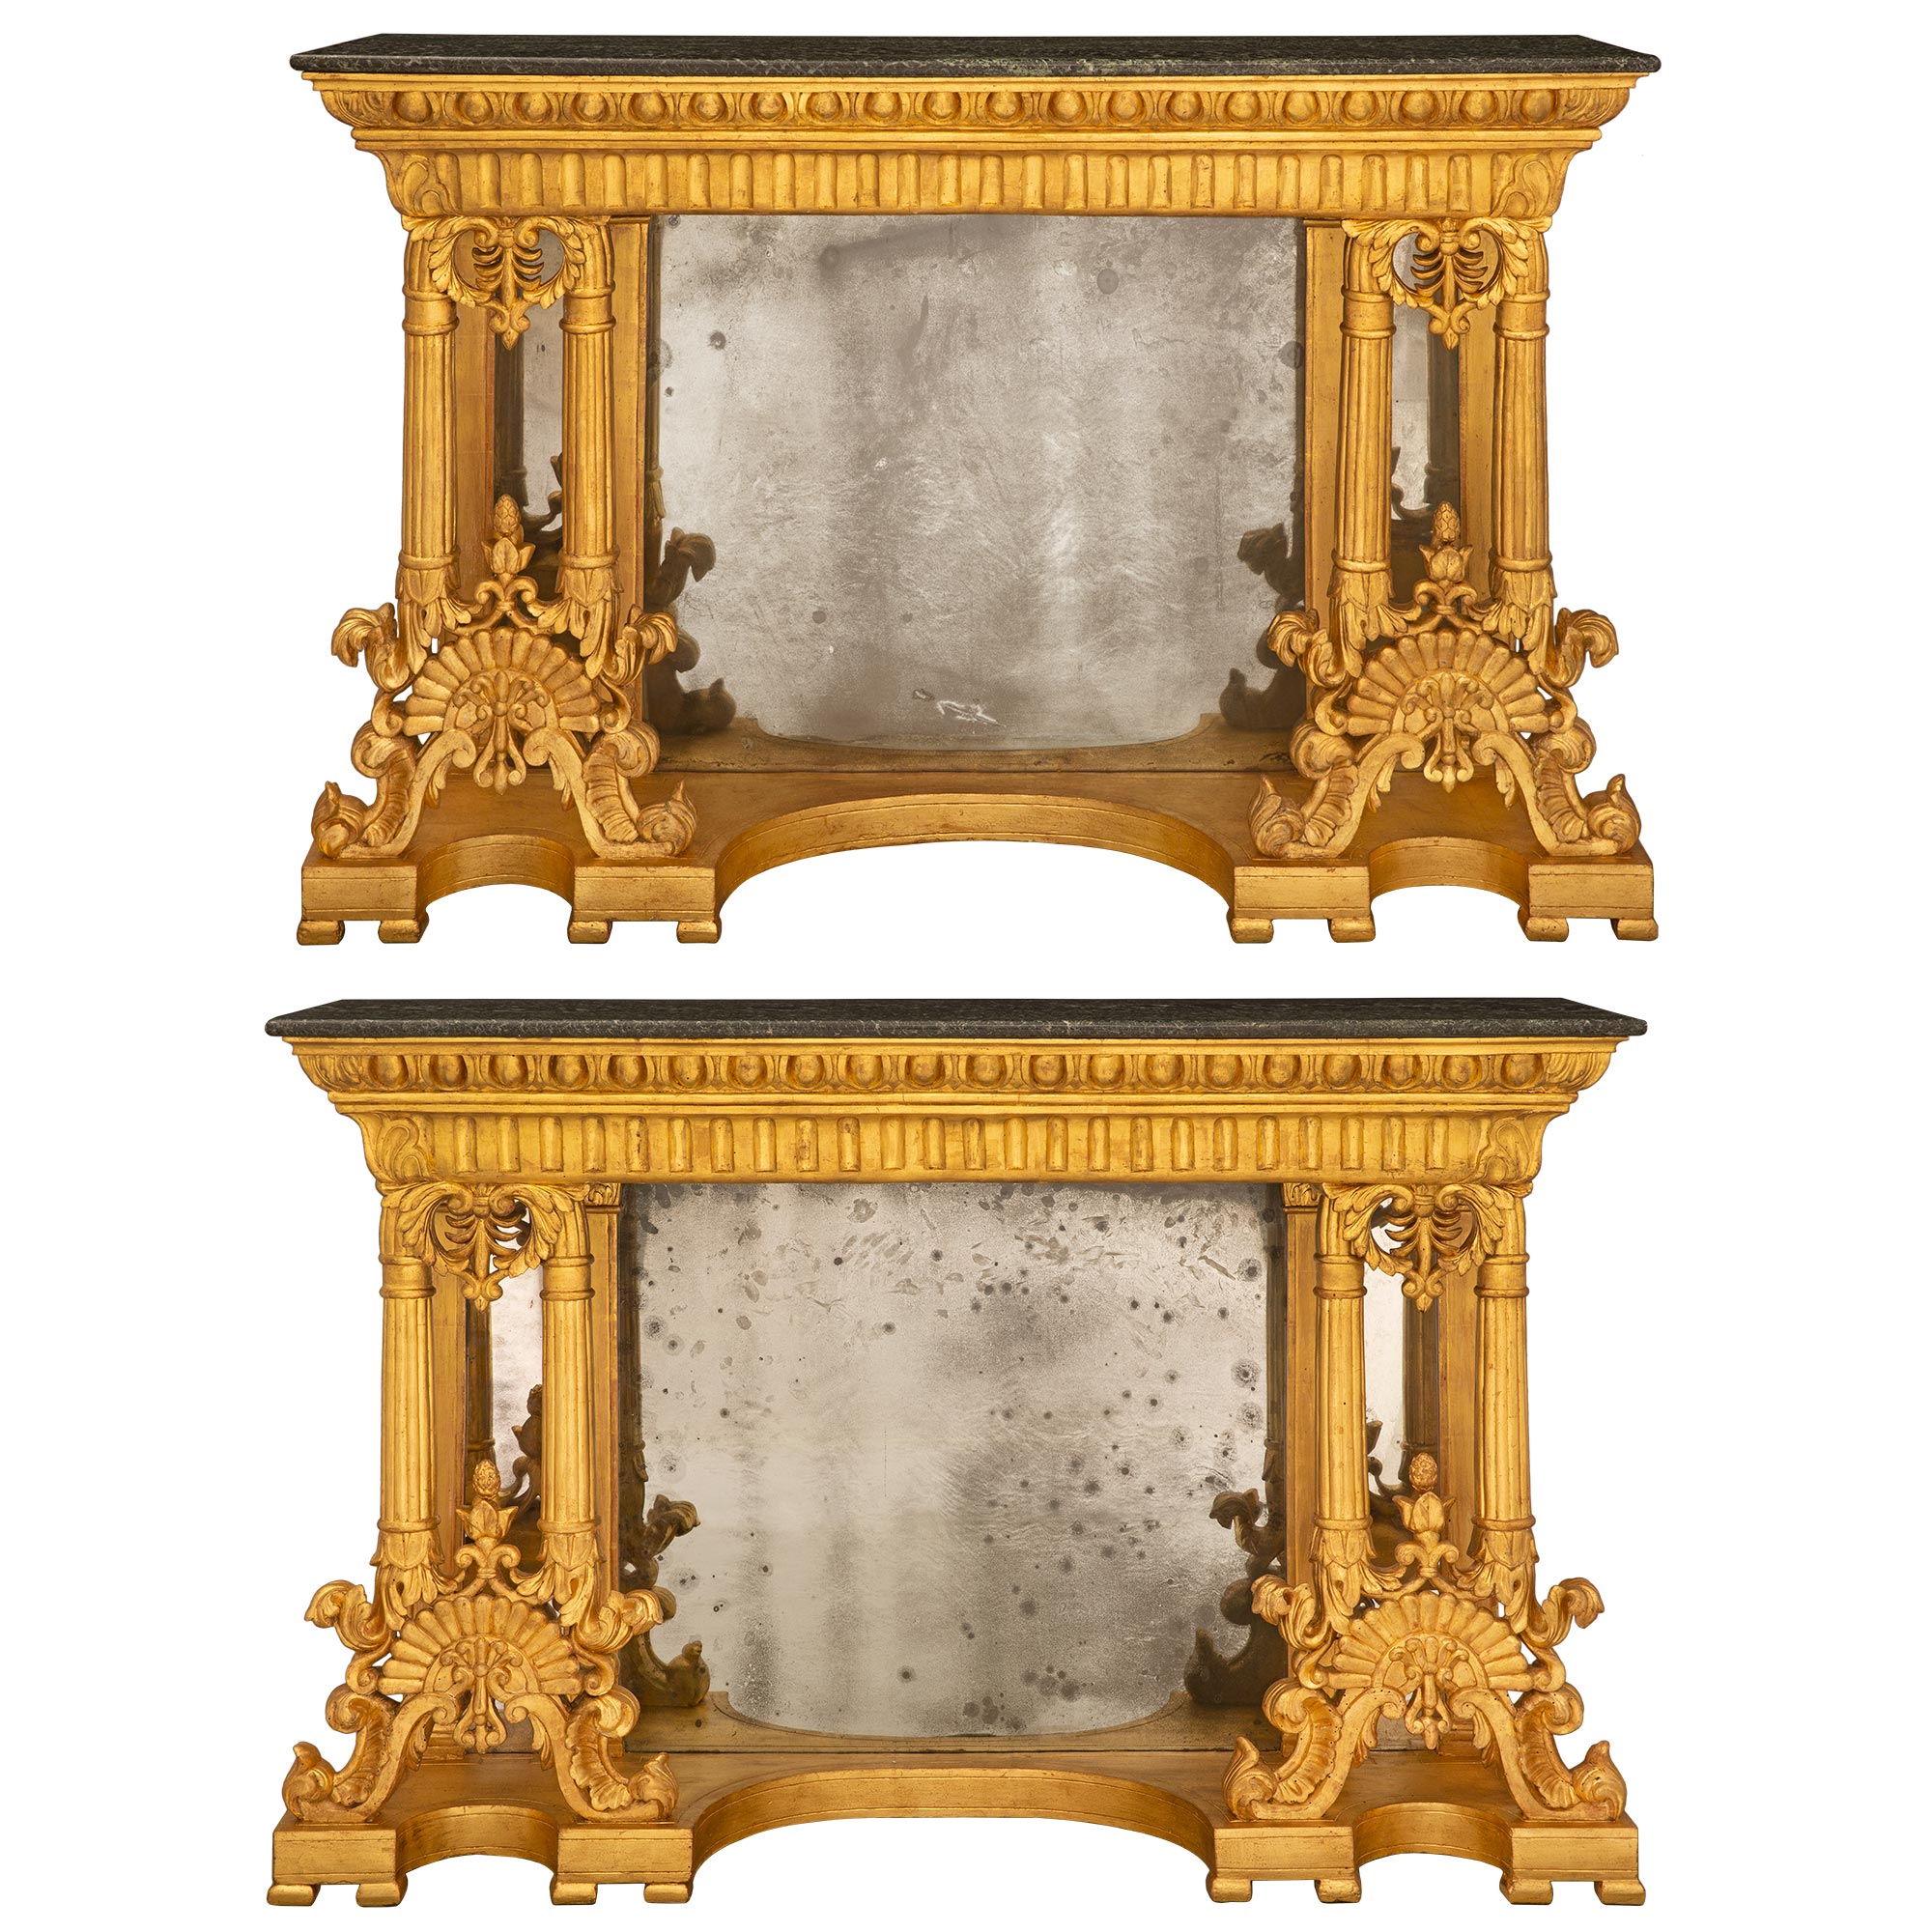 Paire de consoles italiennes néo-classiques du 19ème siècle en bois doré et marbre